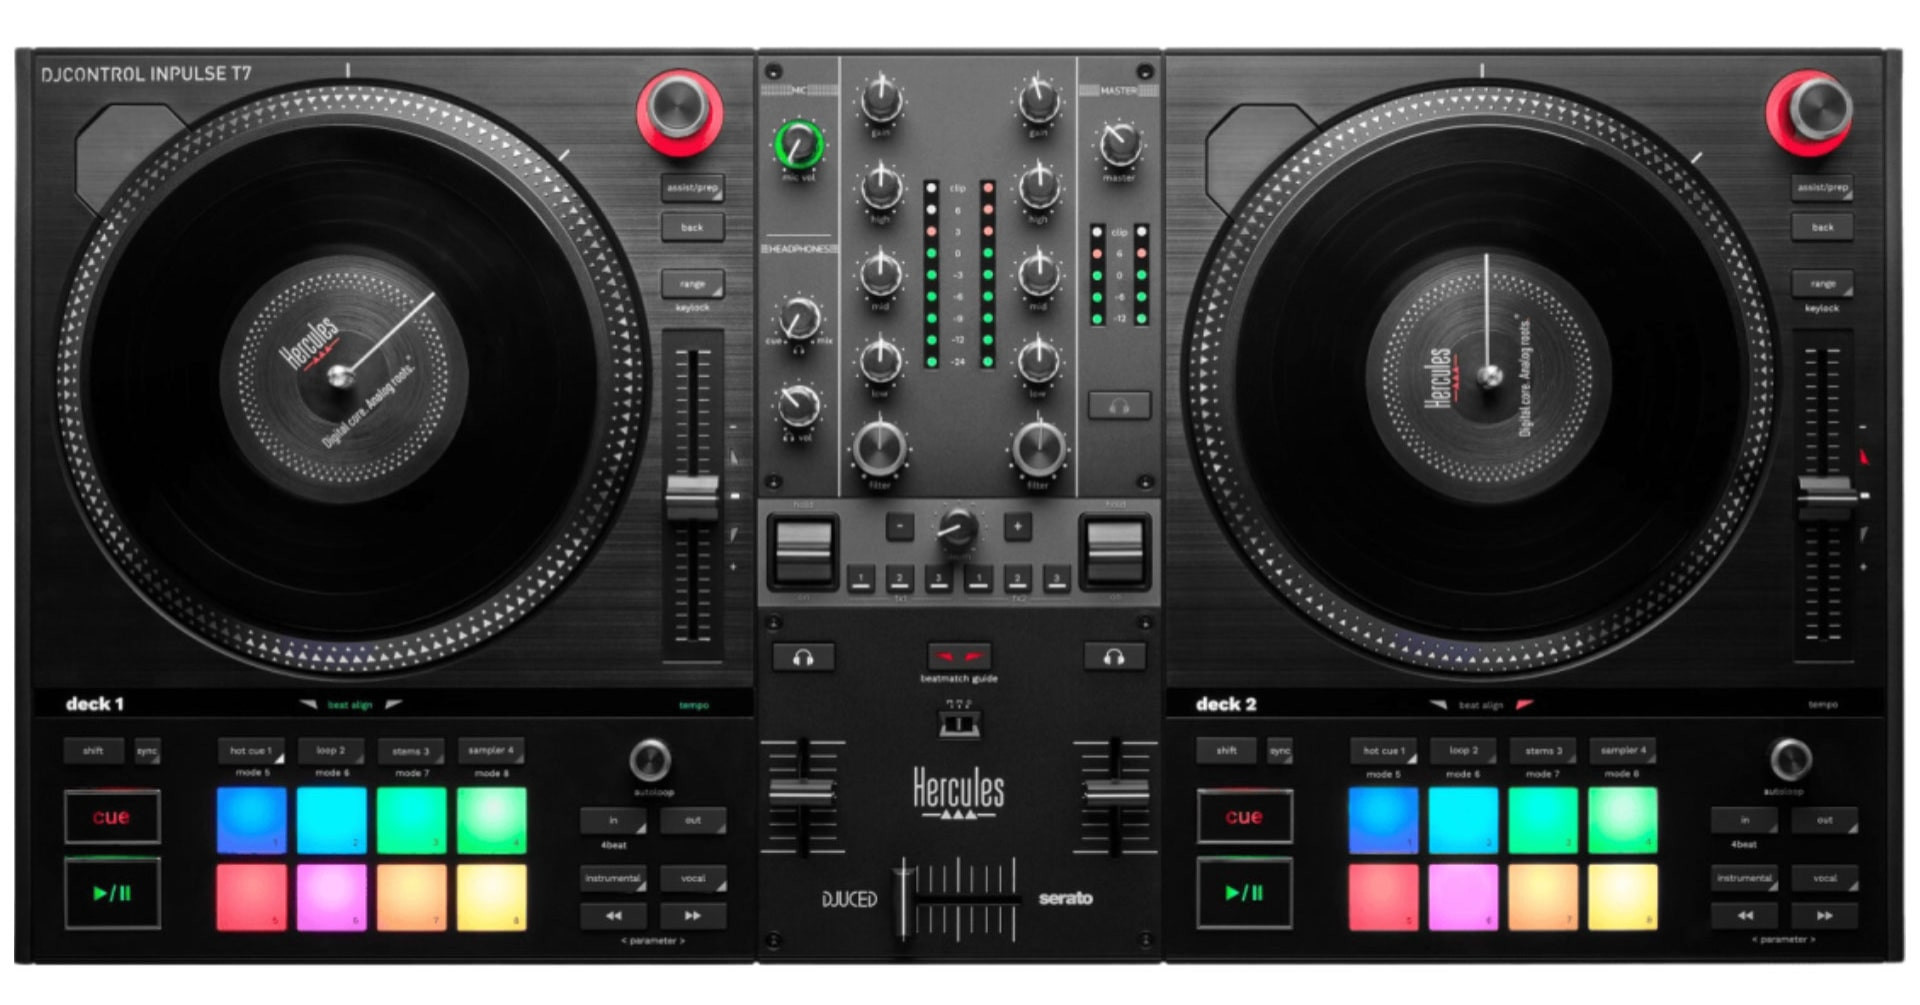 Inpulse T7 - nowy kontroler DJski marki Hercules DJ